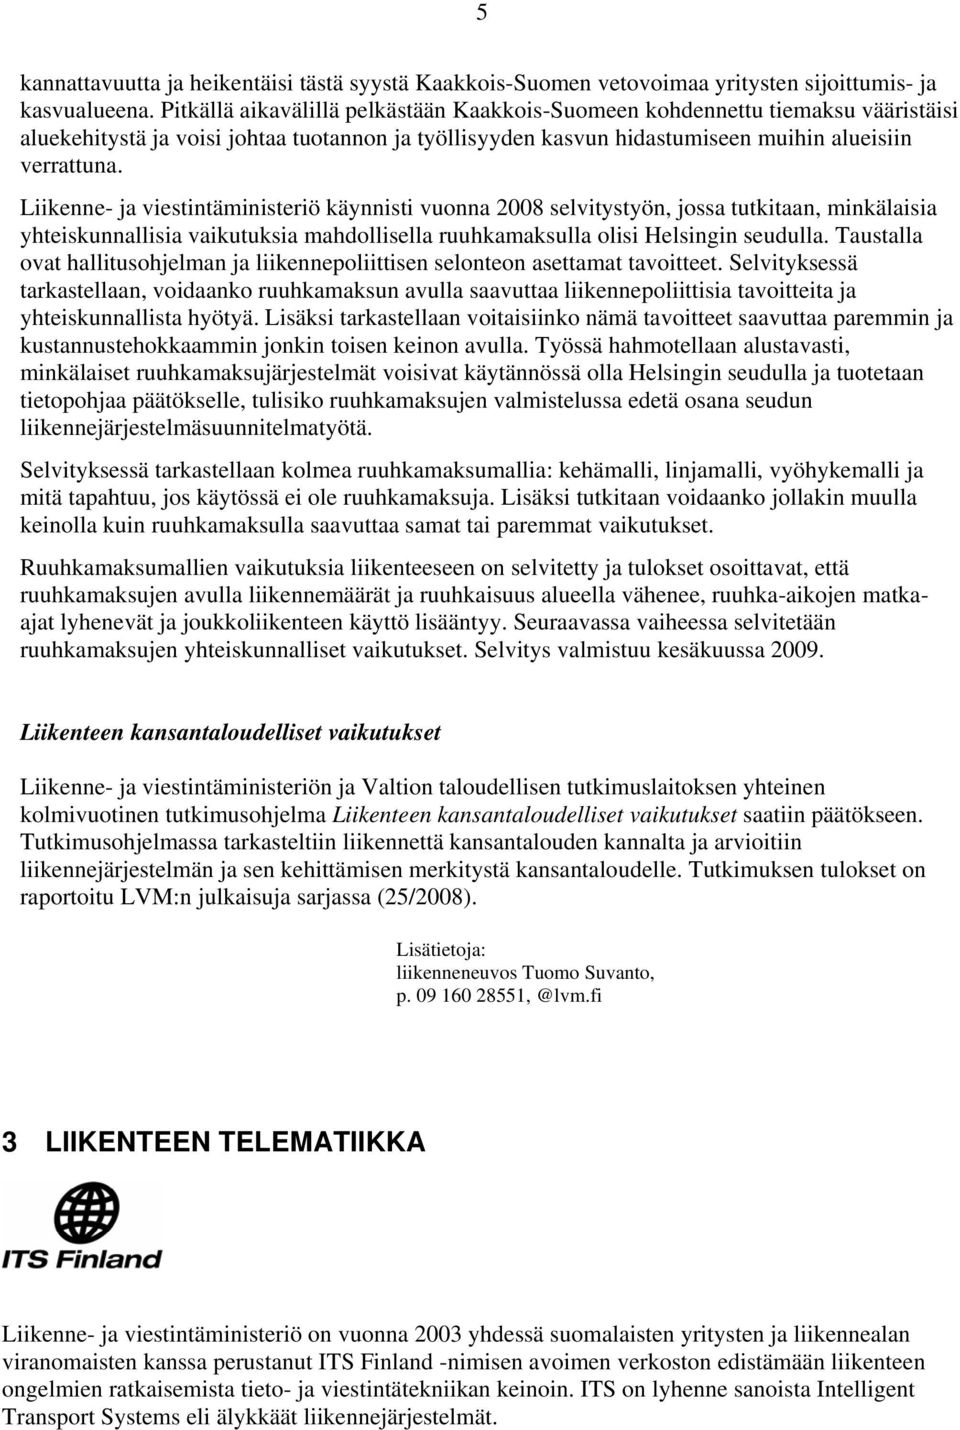 Liikenne- ja viestintäministeriö käynnisti vuonna 2008 selvitystyön, jossa tutkitaan, minkälaisia yhteiskunnallisia vaikutuksia mahdollisella ruuhkamaksulla olisi Helsingin seudulla.